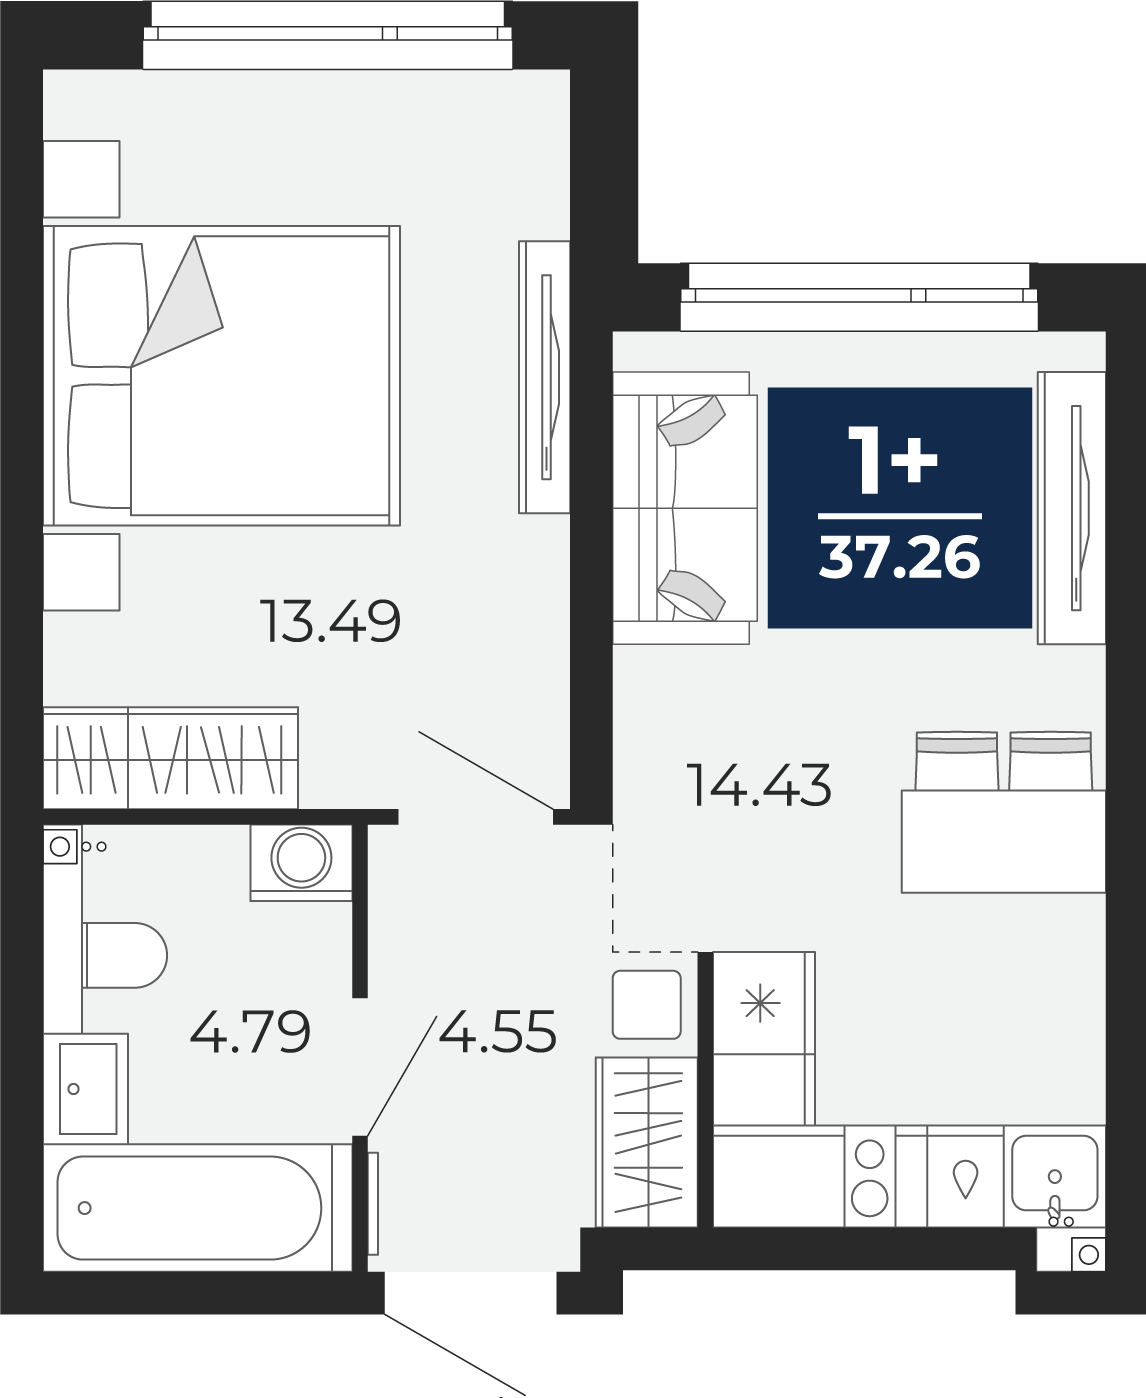 Квартира № 115, 1-комнатная, 37.26 кв. м, 1 этаж